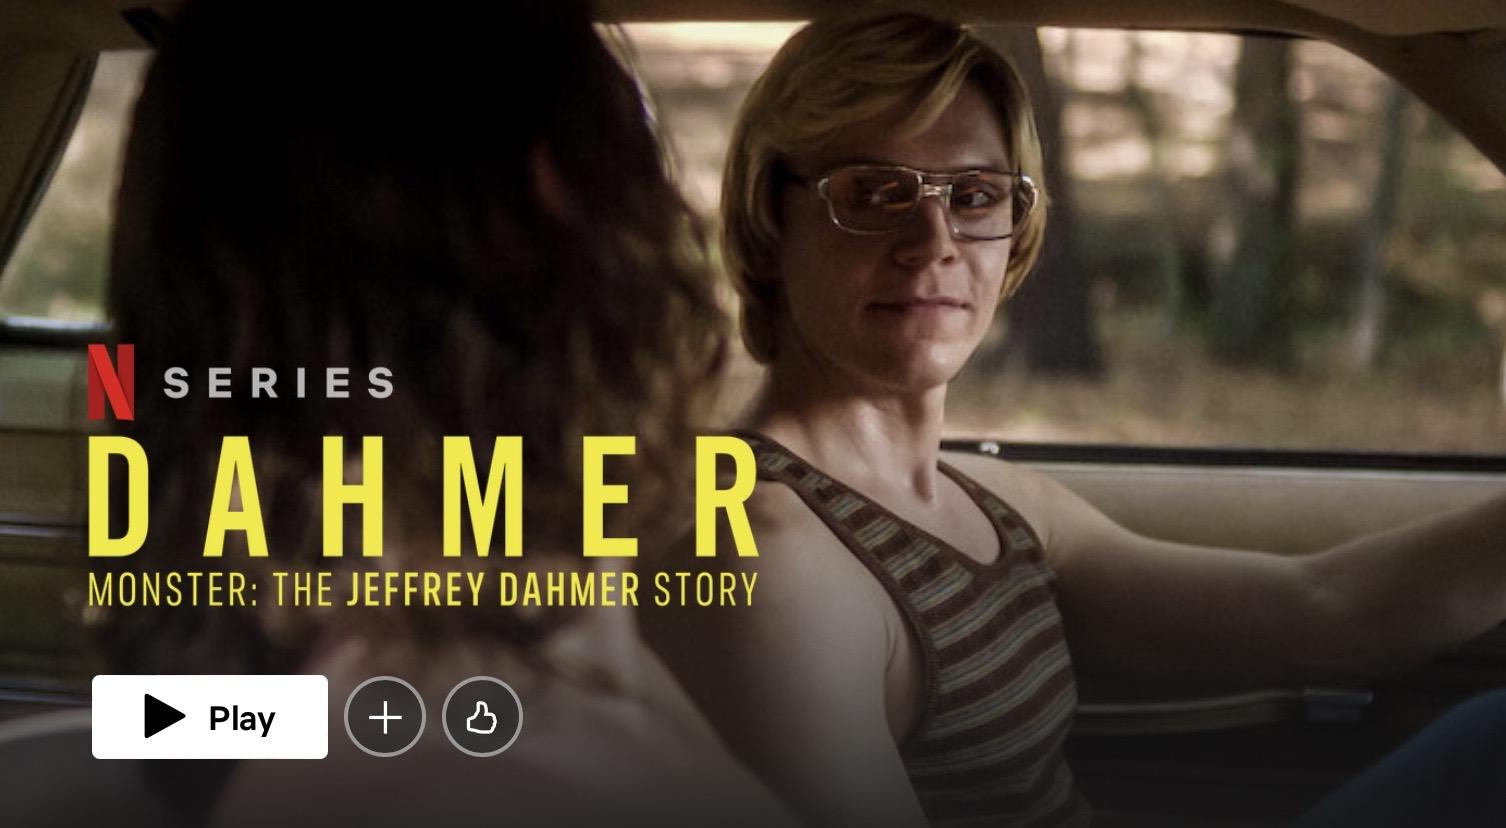 Evan Peters on Playing Dahmer  DAHMER - Monster: The Jeffrey